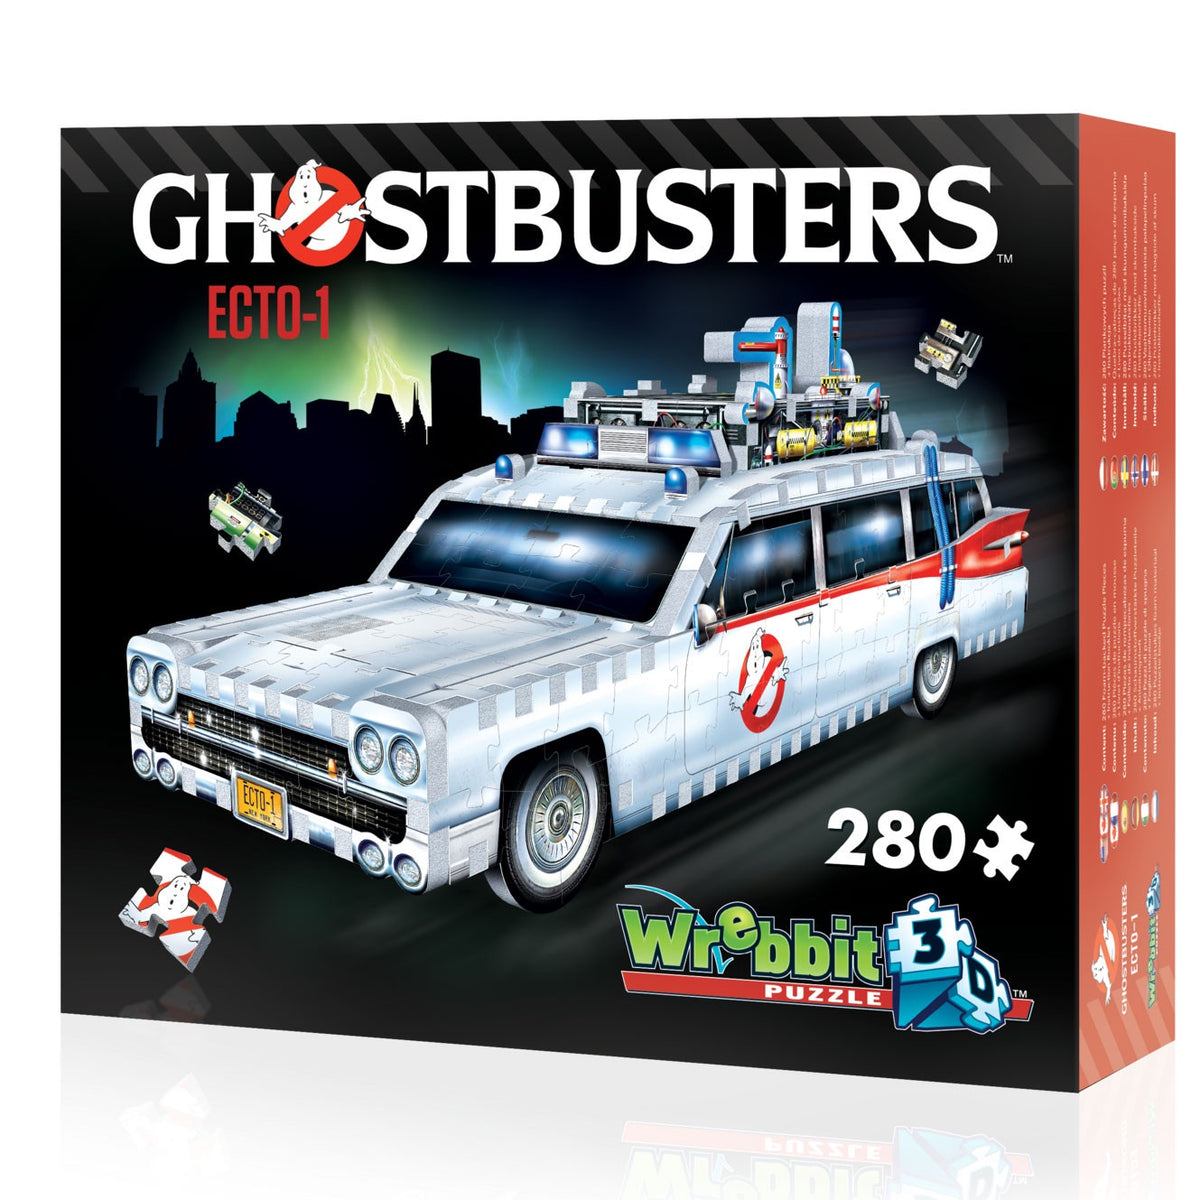 3D Ghost Buster ECTO-1 280 Piece Jigsaw